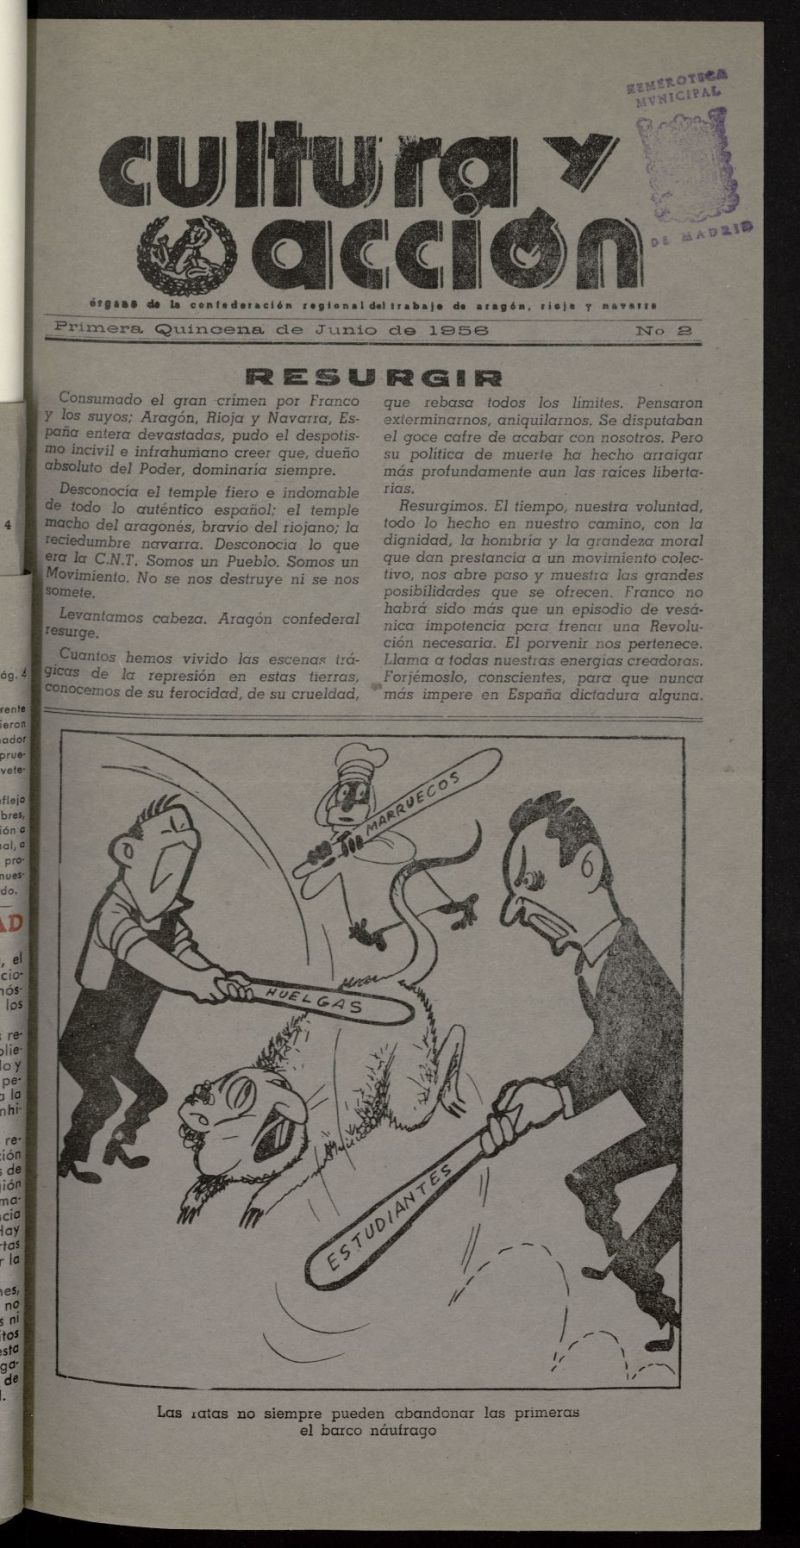 Cultura y Accin. rgano de la C.N.T. de Aragn, Rioja y Navarra de la 1 quincena de junio de 1956